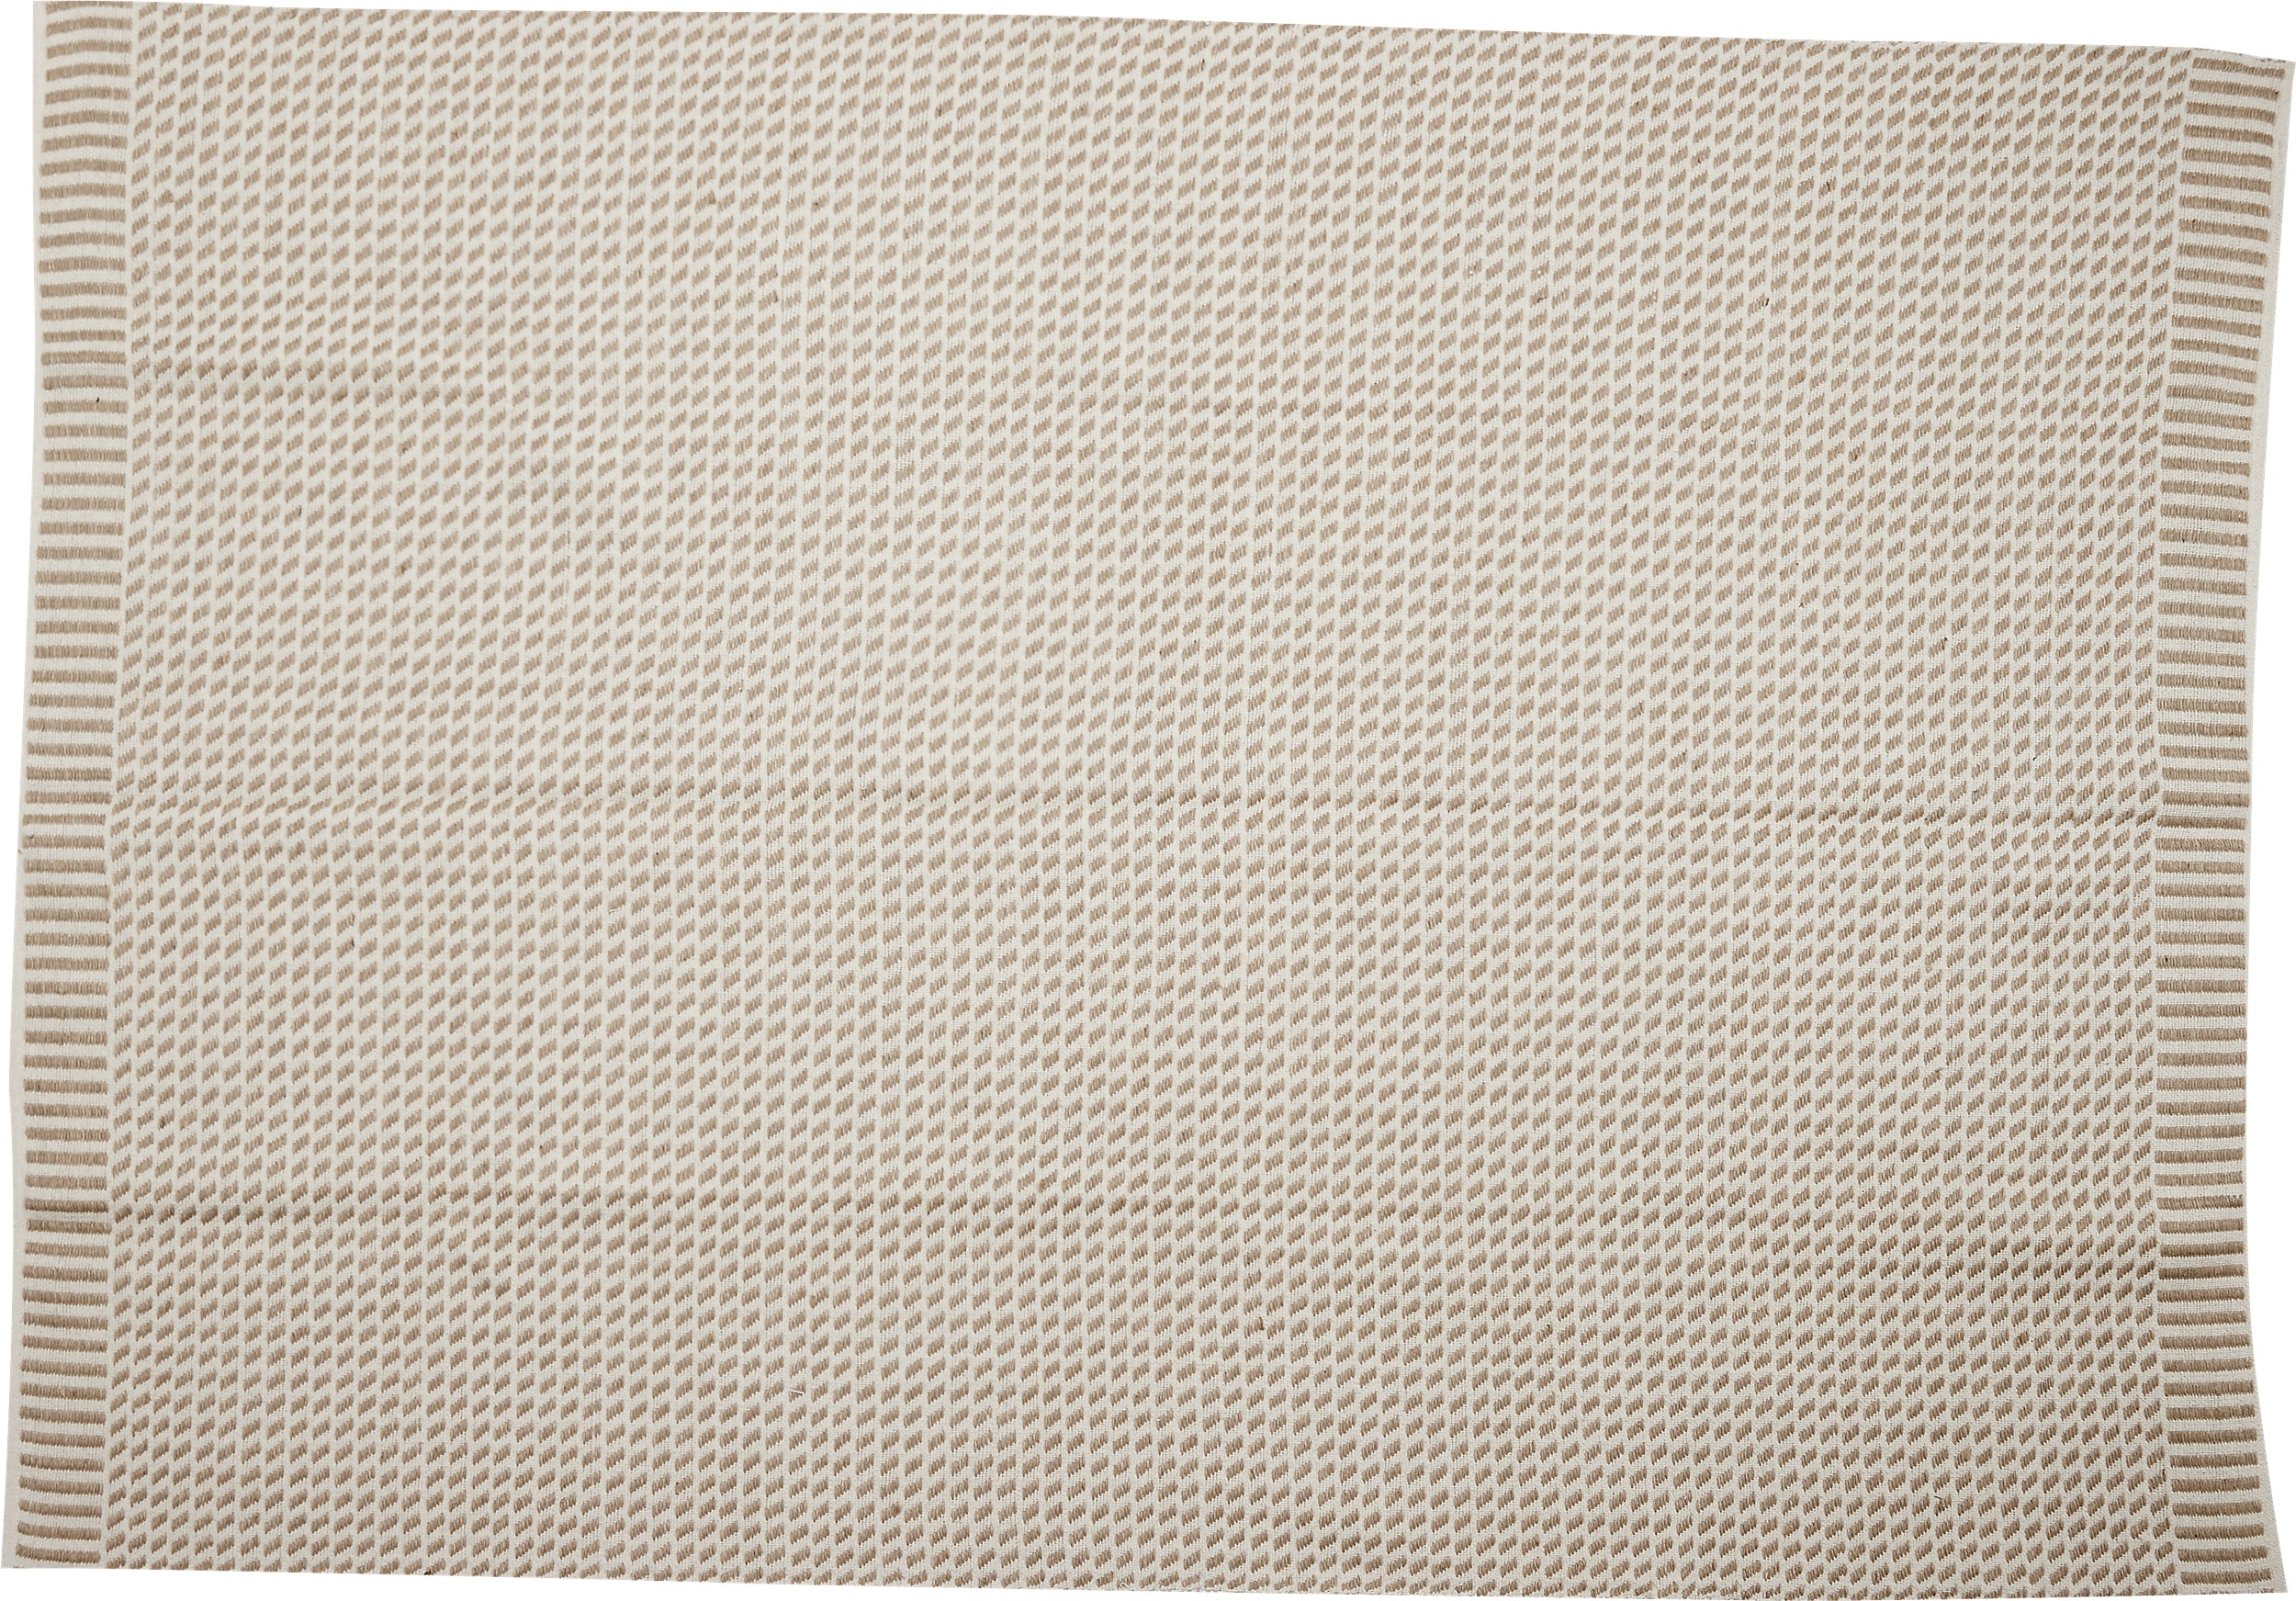 Tidana Jute tæppe 160 x 230 cm - Offwhite/natur farvet og Jute/bomuld